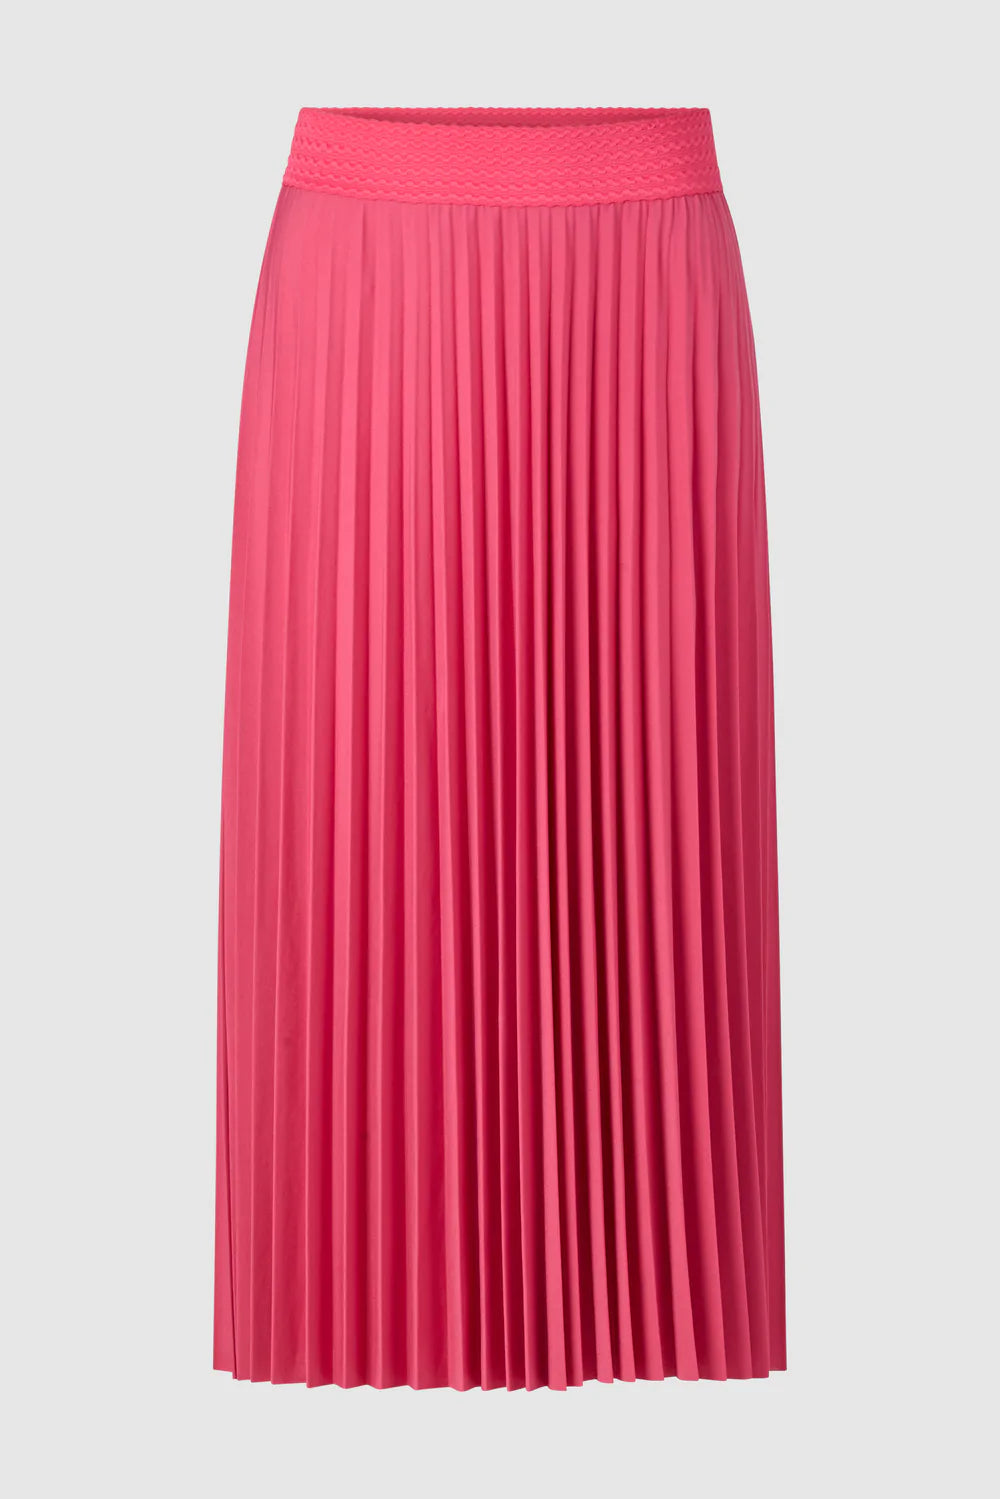 E2207 || Midi Skirt || Raspberry